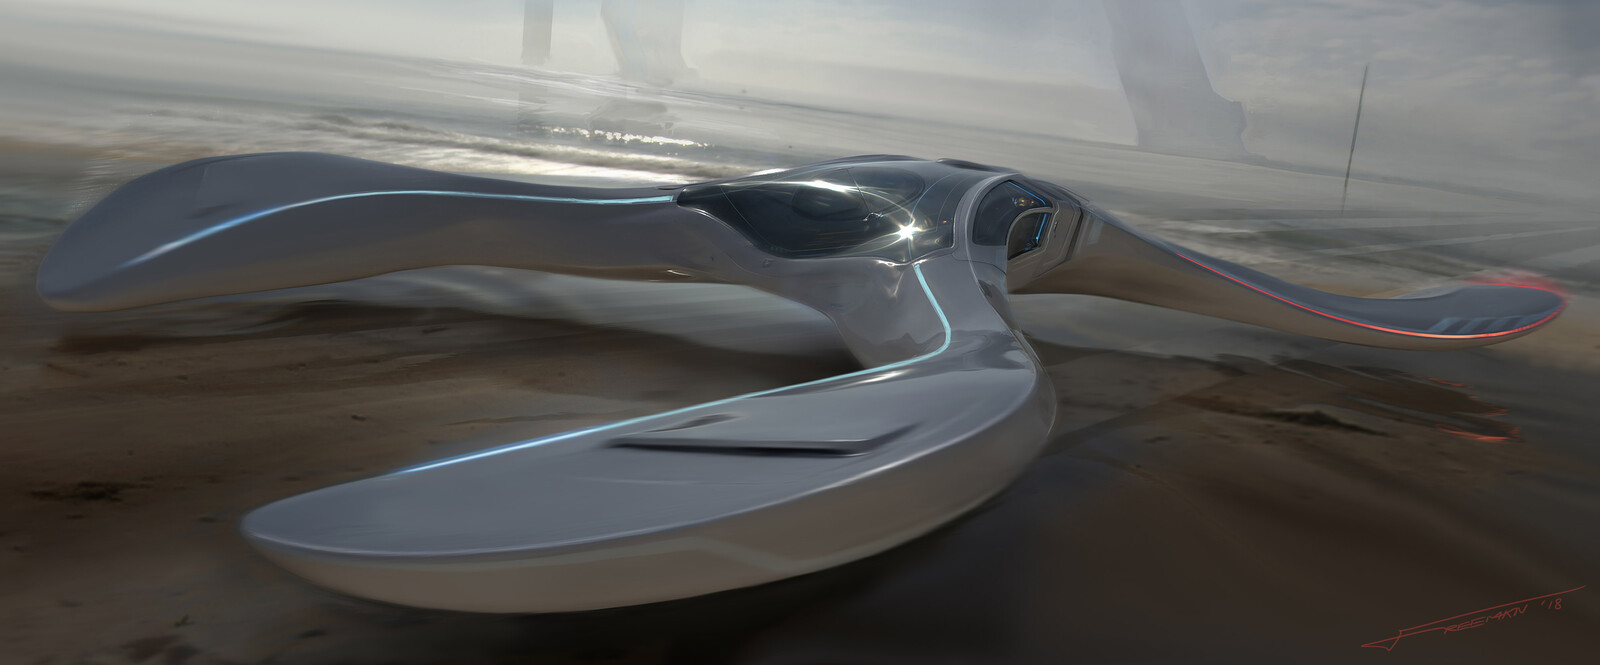 Mud Skimmer 1 - Vehicle Concept 2018